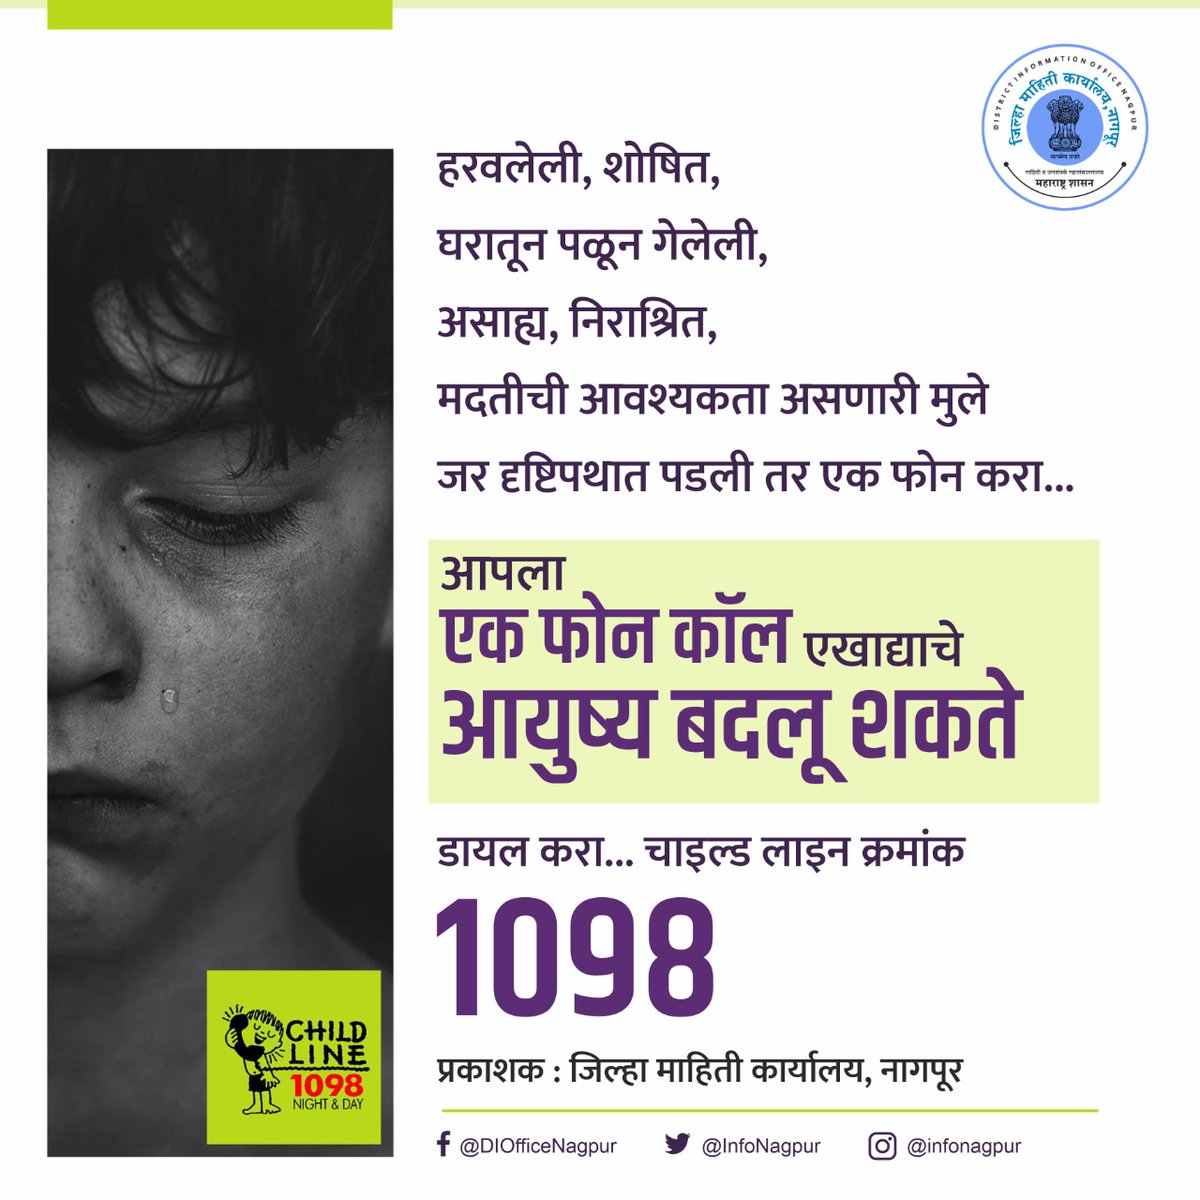 आपला एक फोन कॉल एखाद्याचे आयुष्य बदलू शकते डायल करा... चाइल्ड लाइन क्रमांक 1098
#Lost #missing #Homeless #NeedyChildren #orphans #ChildlineIndiaFoundation #TollFree #support